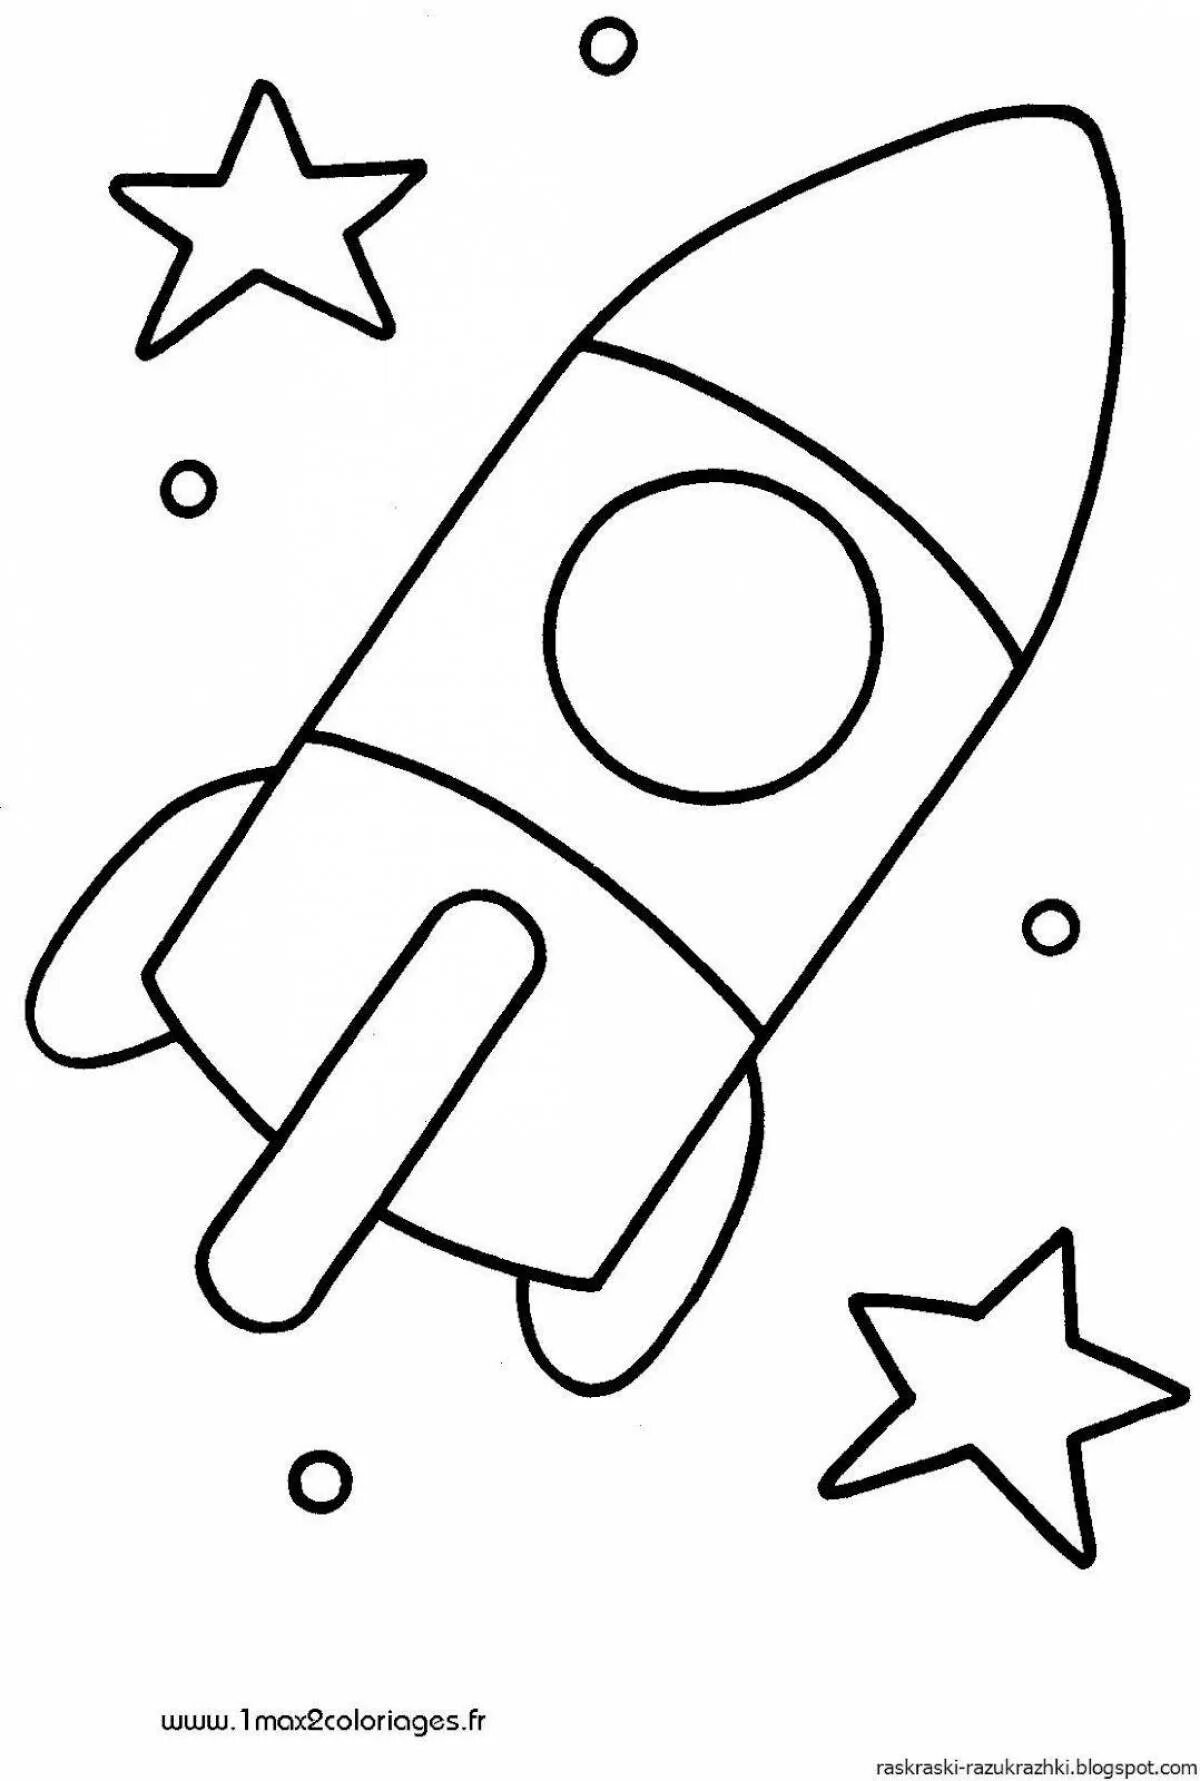 Ракета раскраска. Ракета раскраска для малышей. Раскраски на тему космос для детей 3-4 лет. Раскраска для малышей. Космос. Аппликация ко дню космонавтики шаблоны распечатать